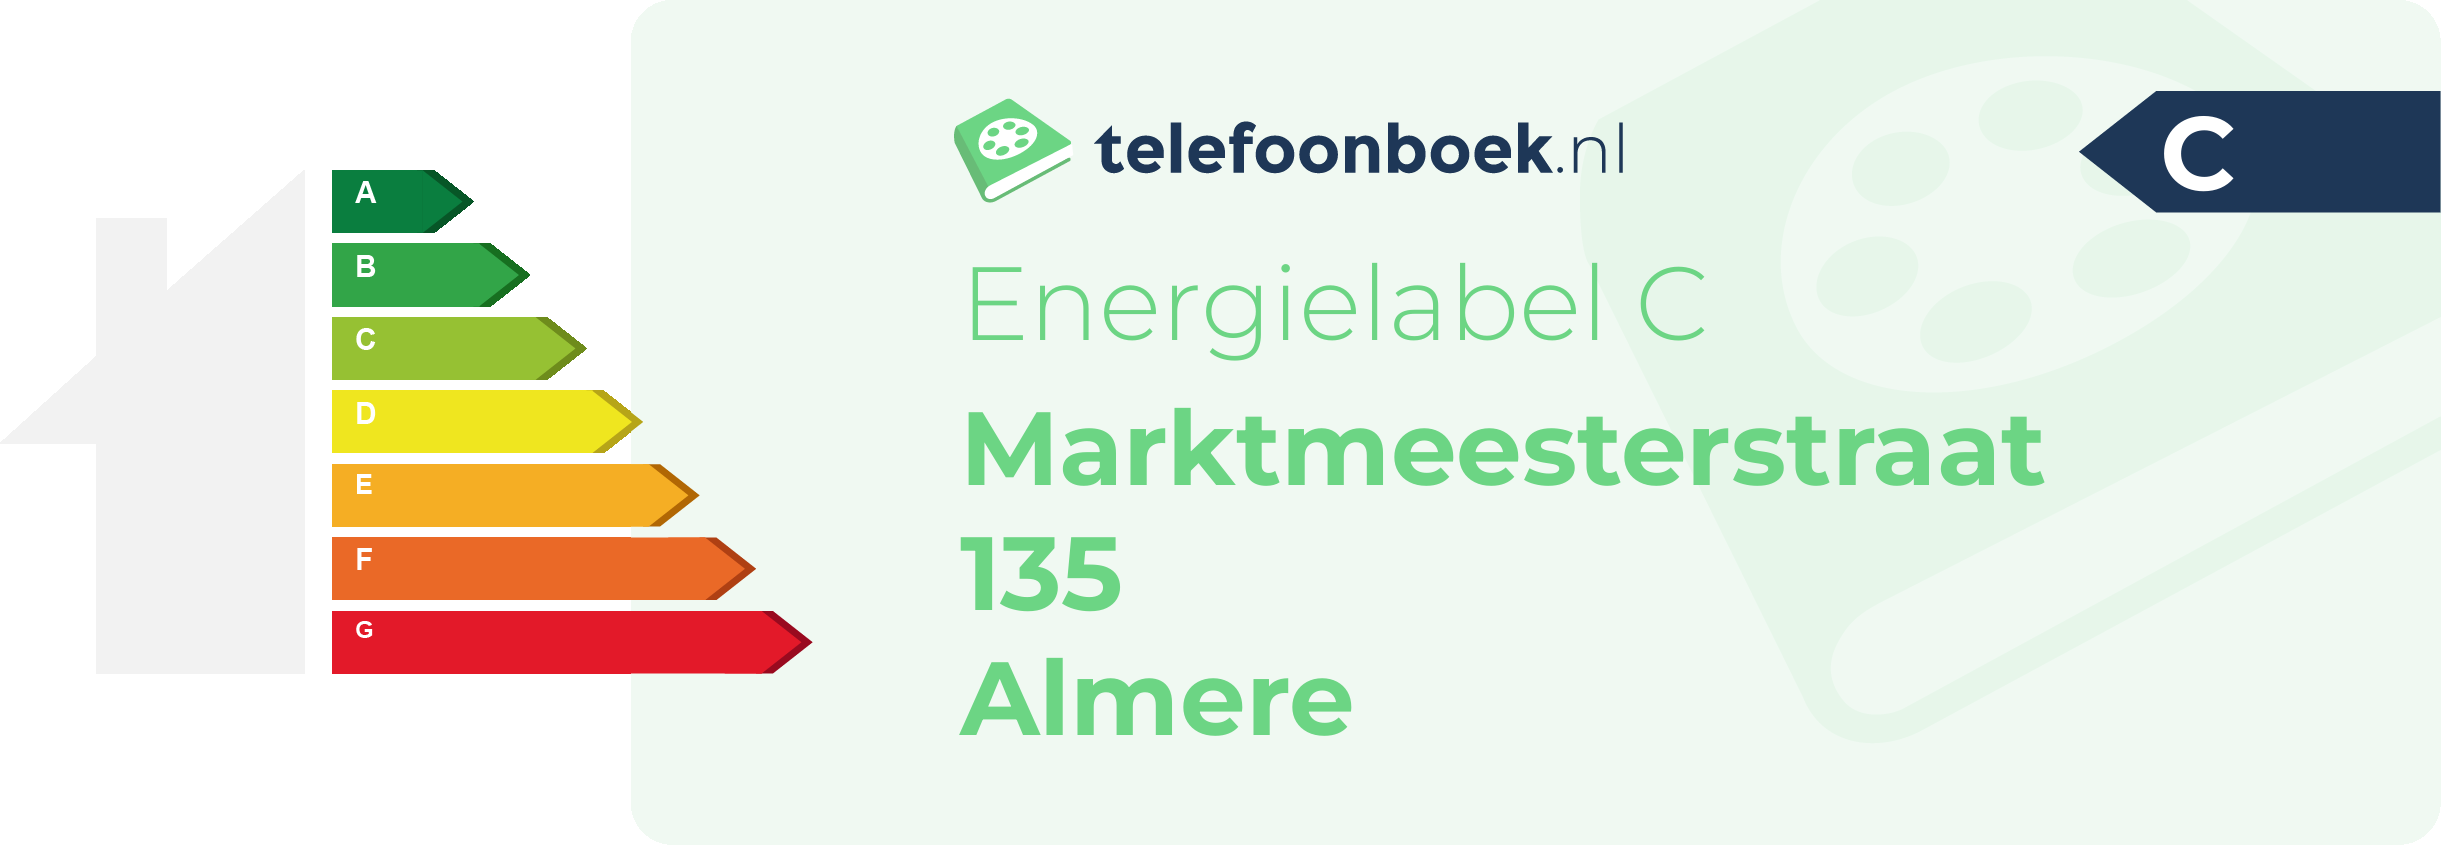 Energielabel Marktmeesterstraat 135 Almere